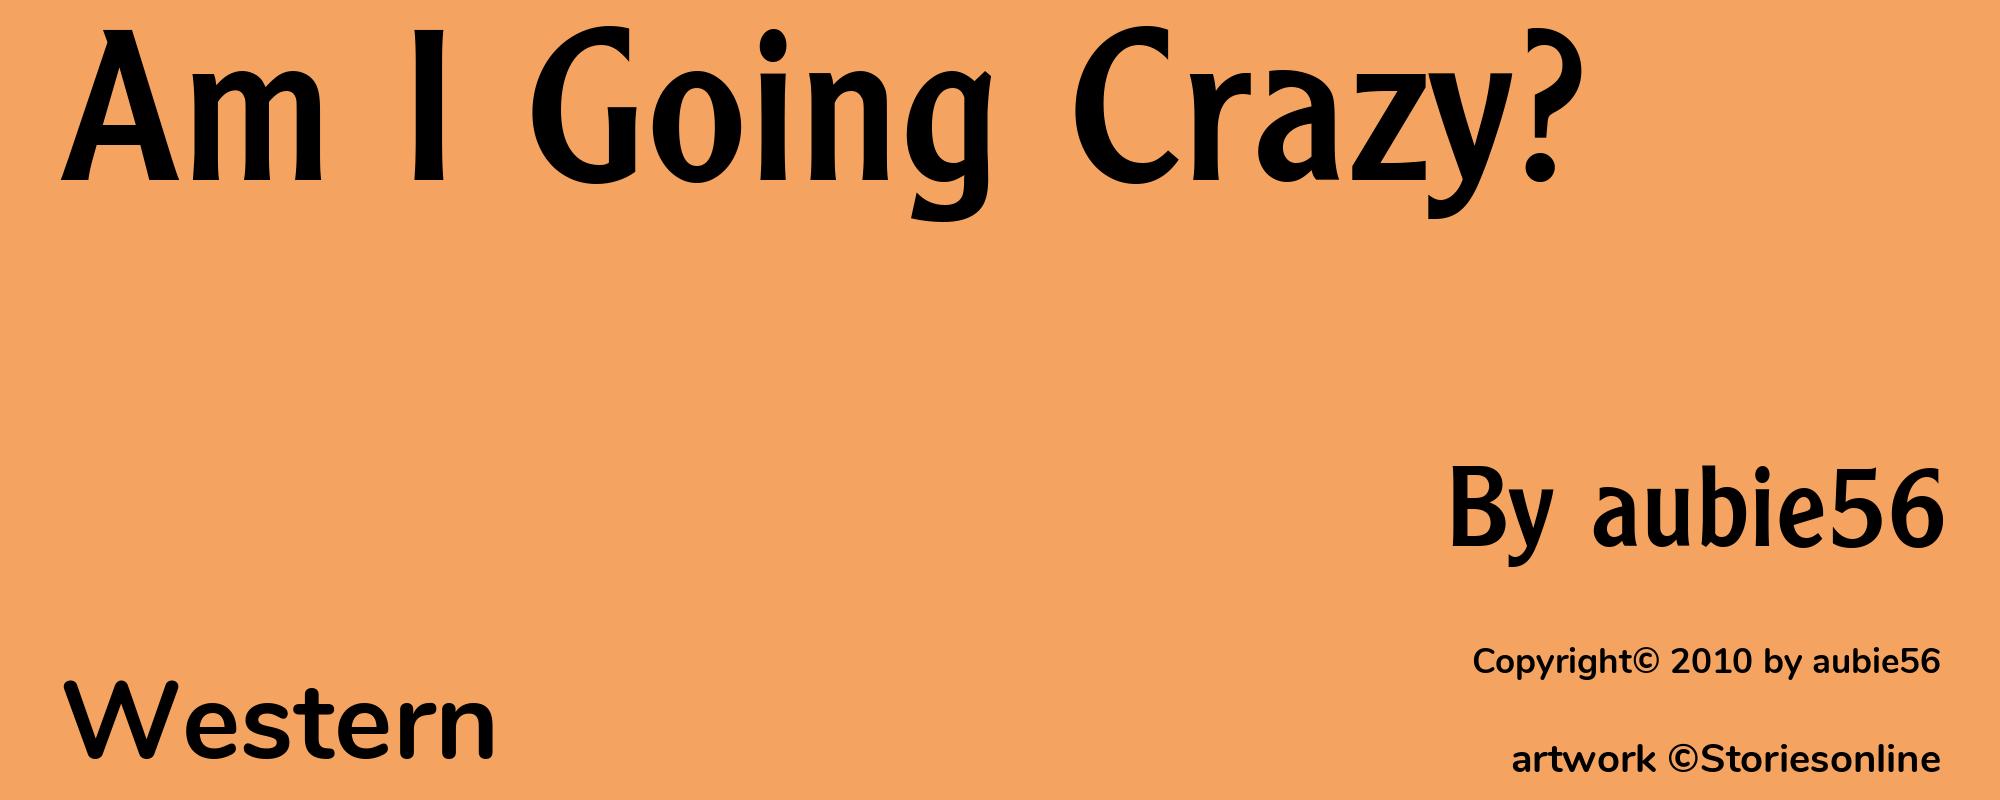 Am I Going Crazy? - Cover